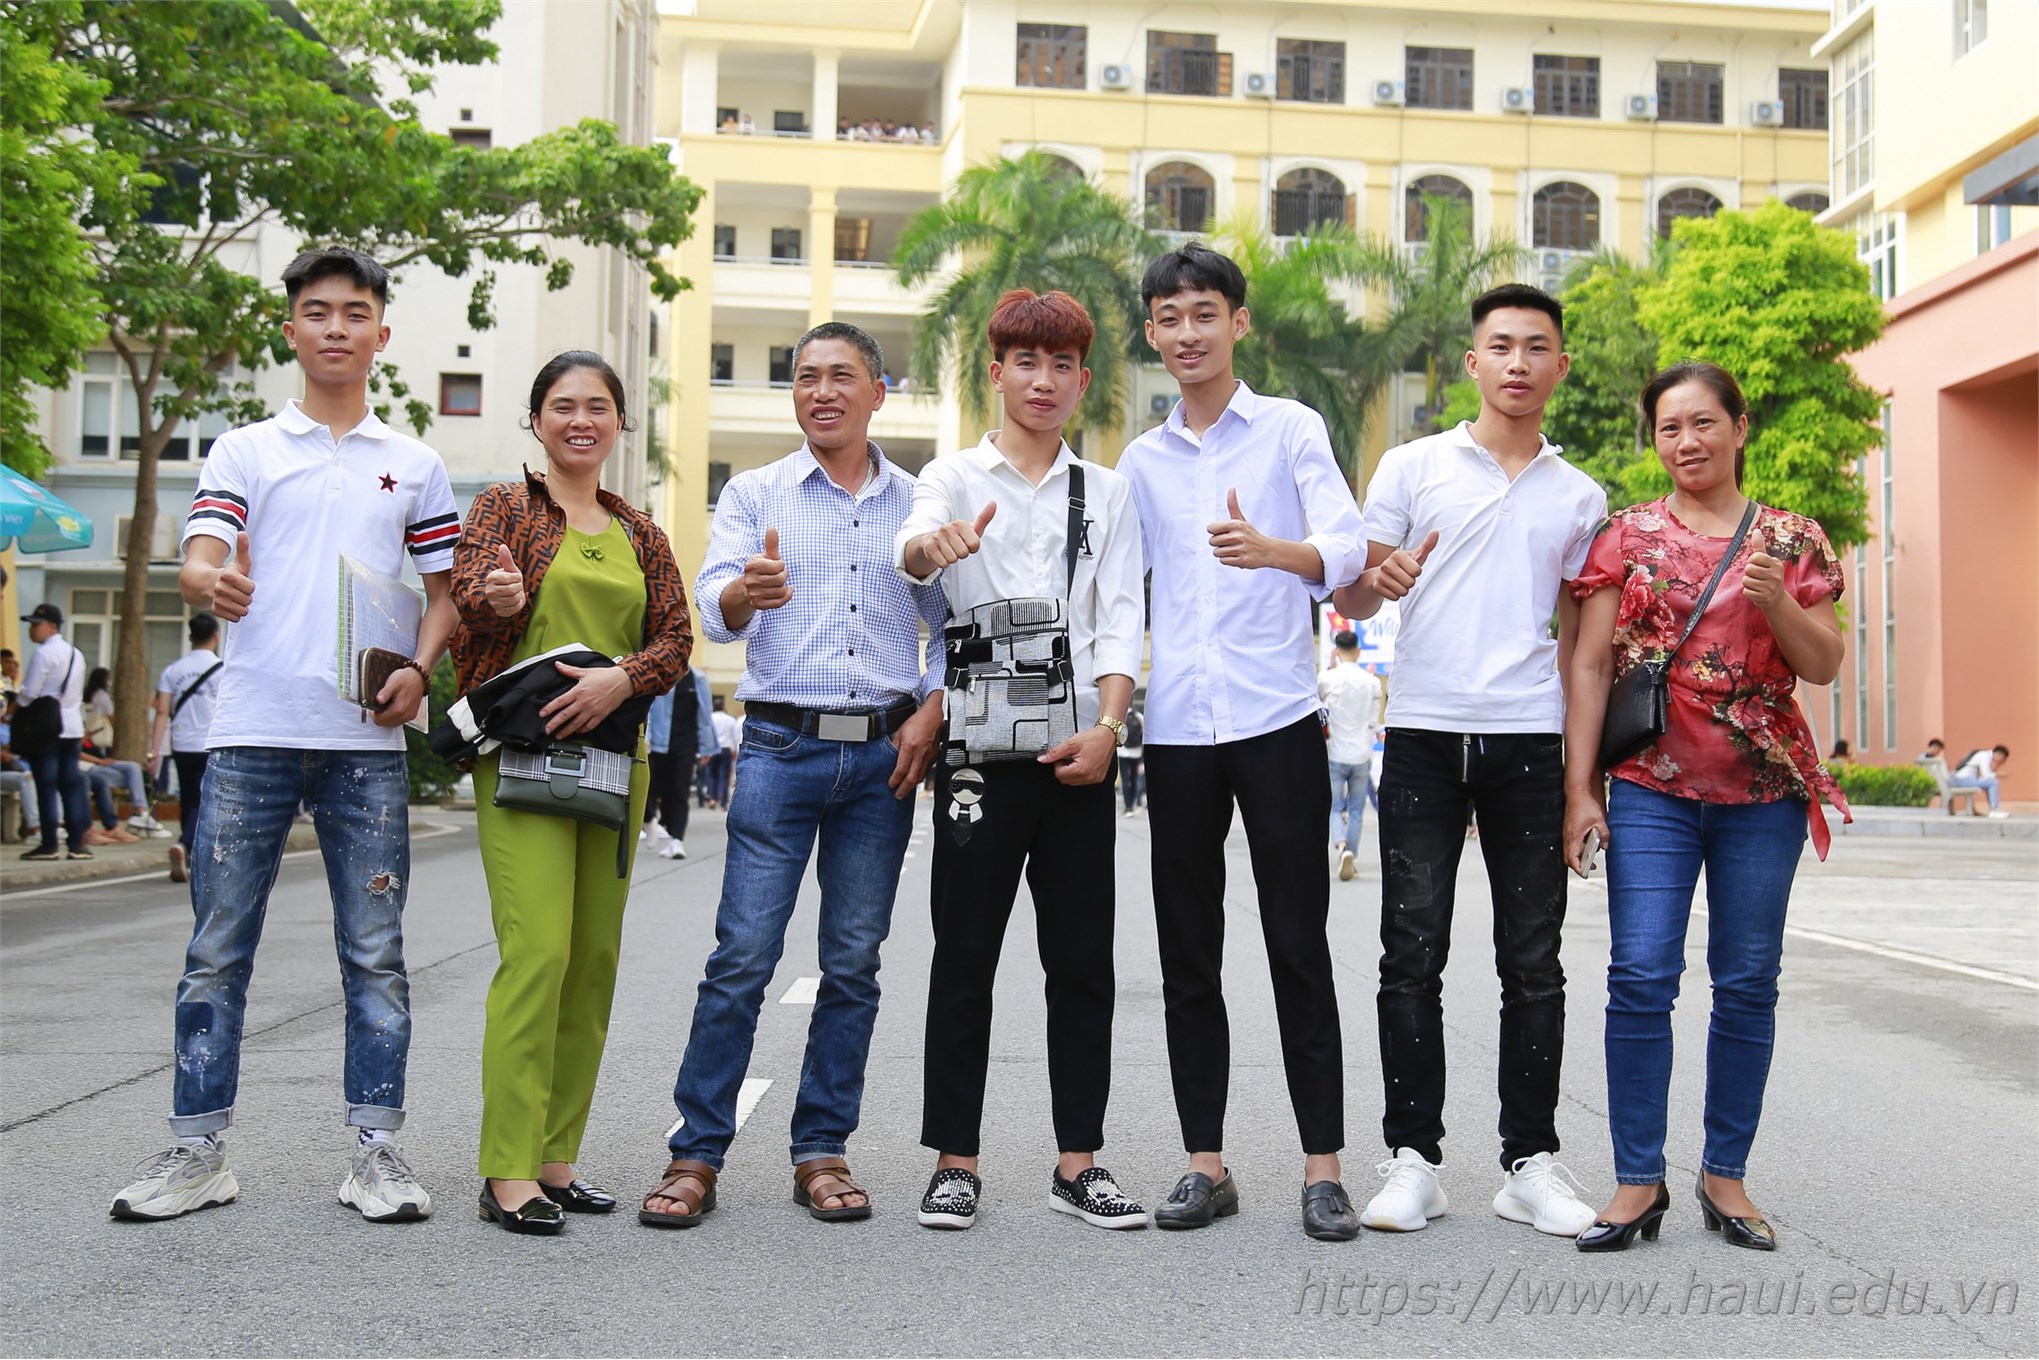 Tân sinh viên Đại học Công nghiệp Hà Nội nhập học năm 2019